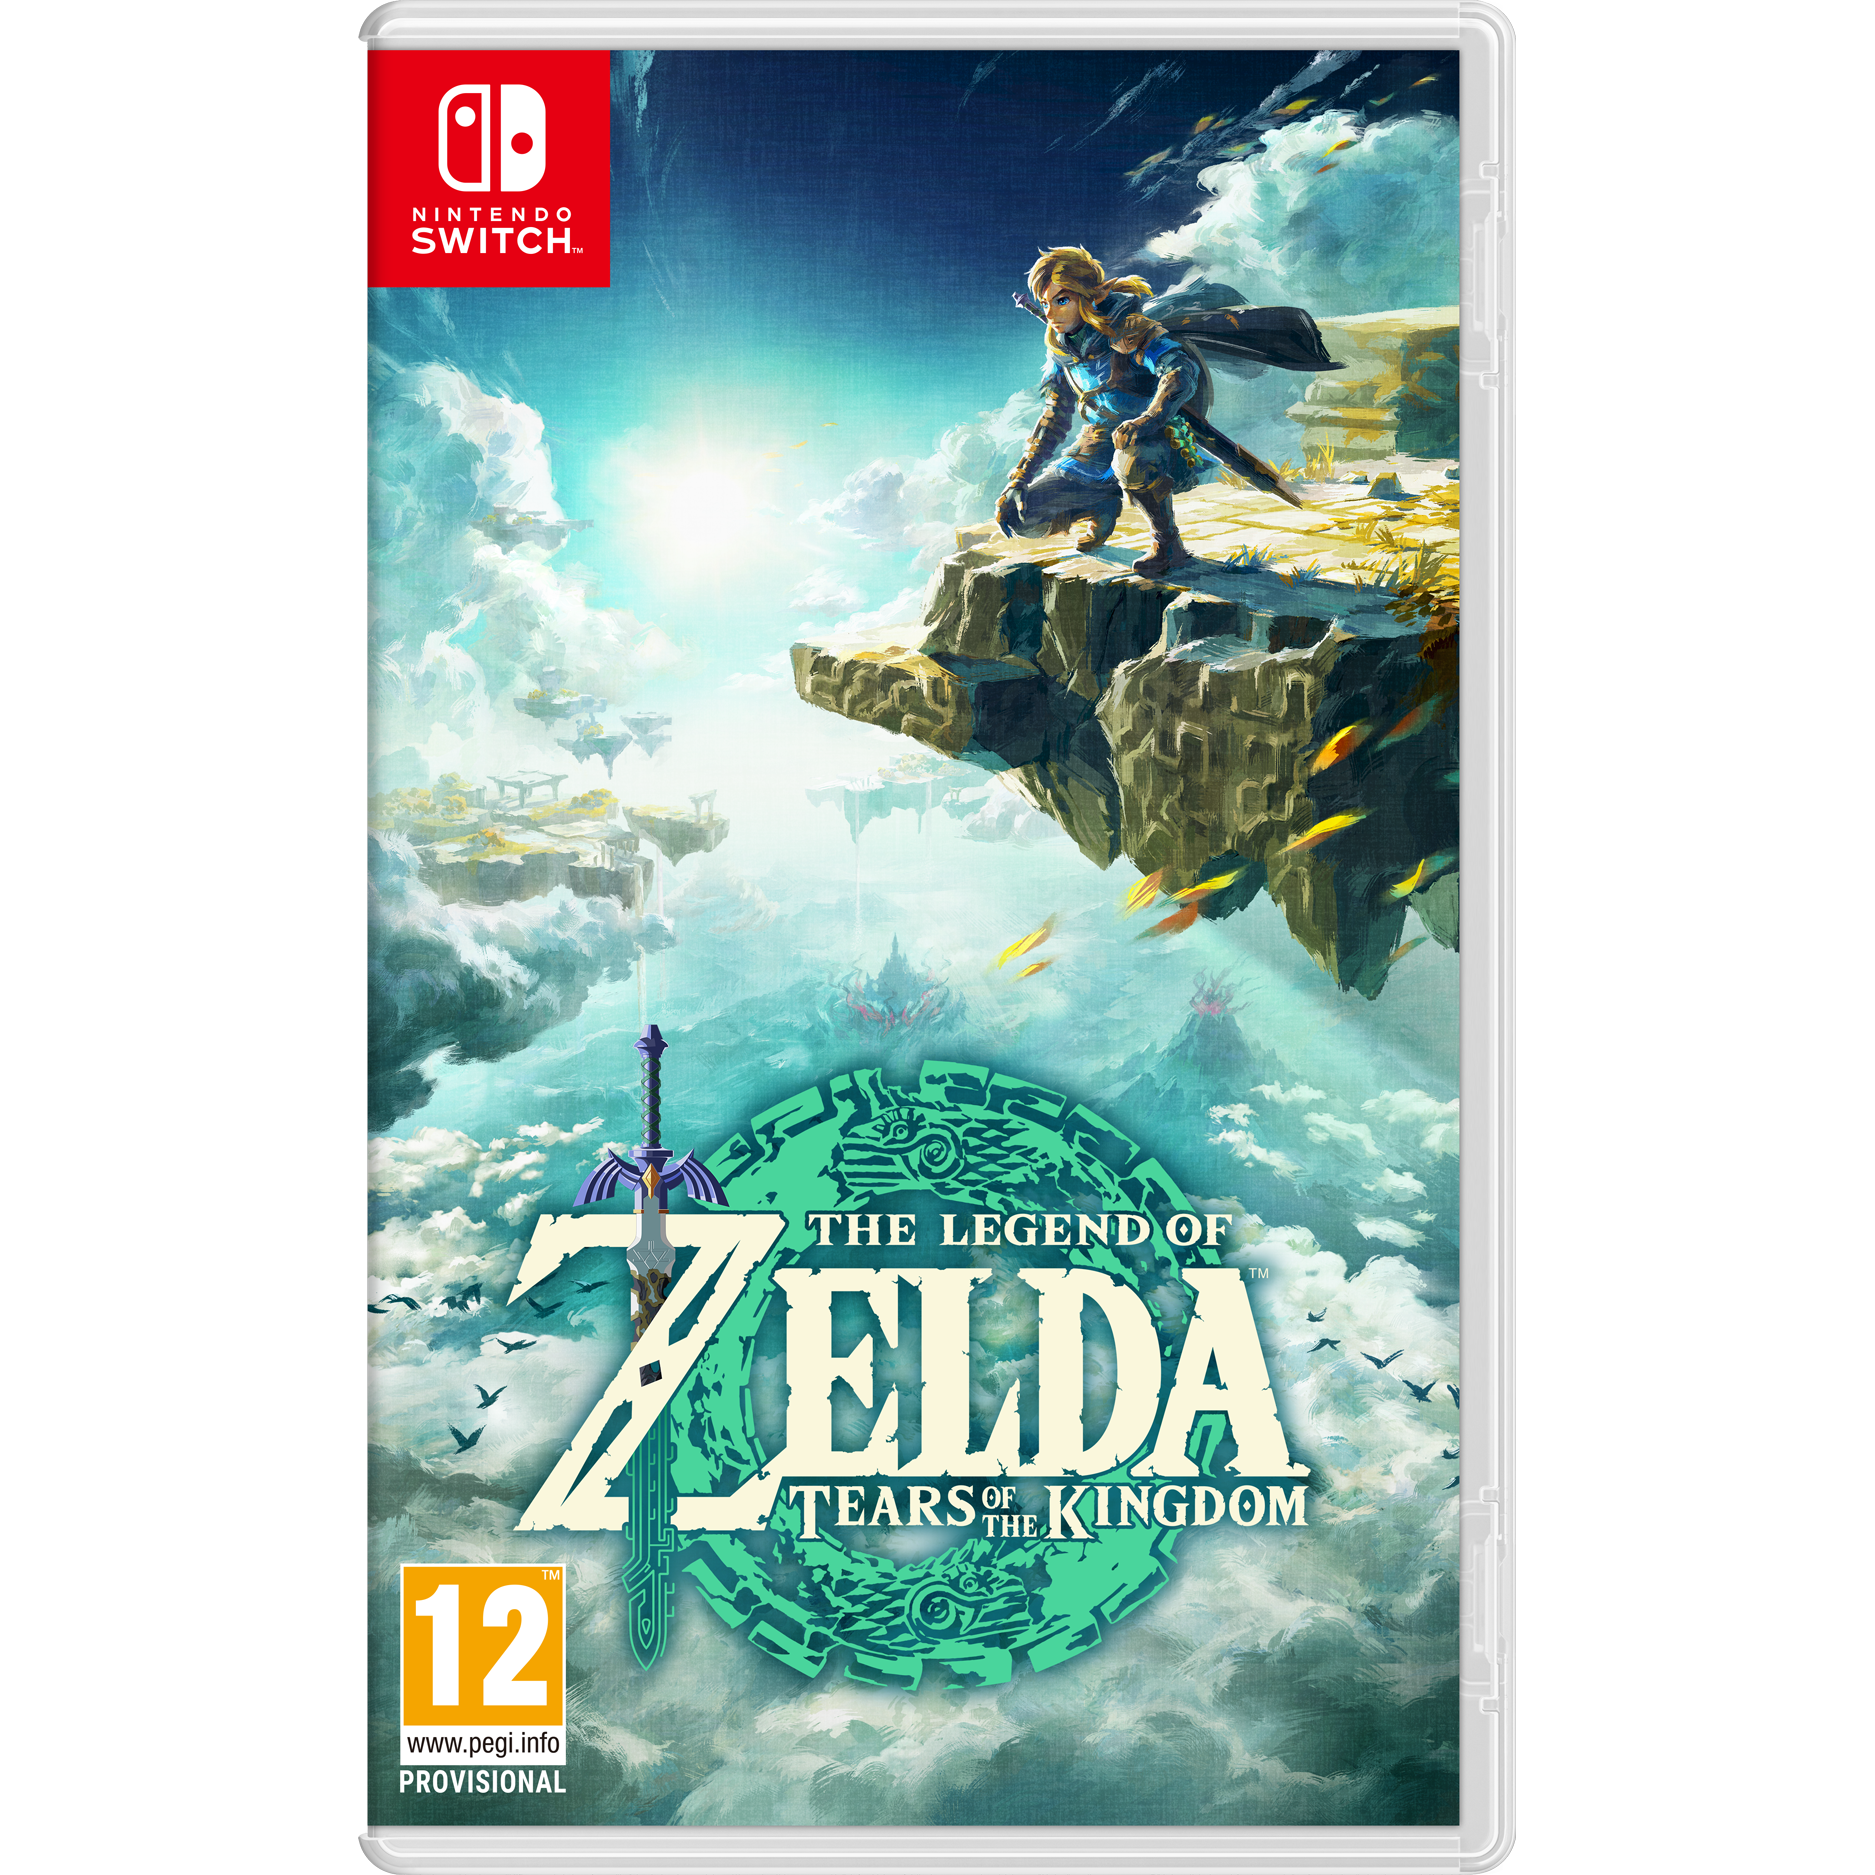  משחק The Legend of Zelda - Tears of Kingdom לקונסולת Nintendo Switch